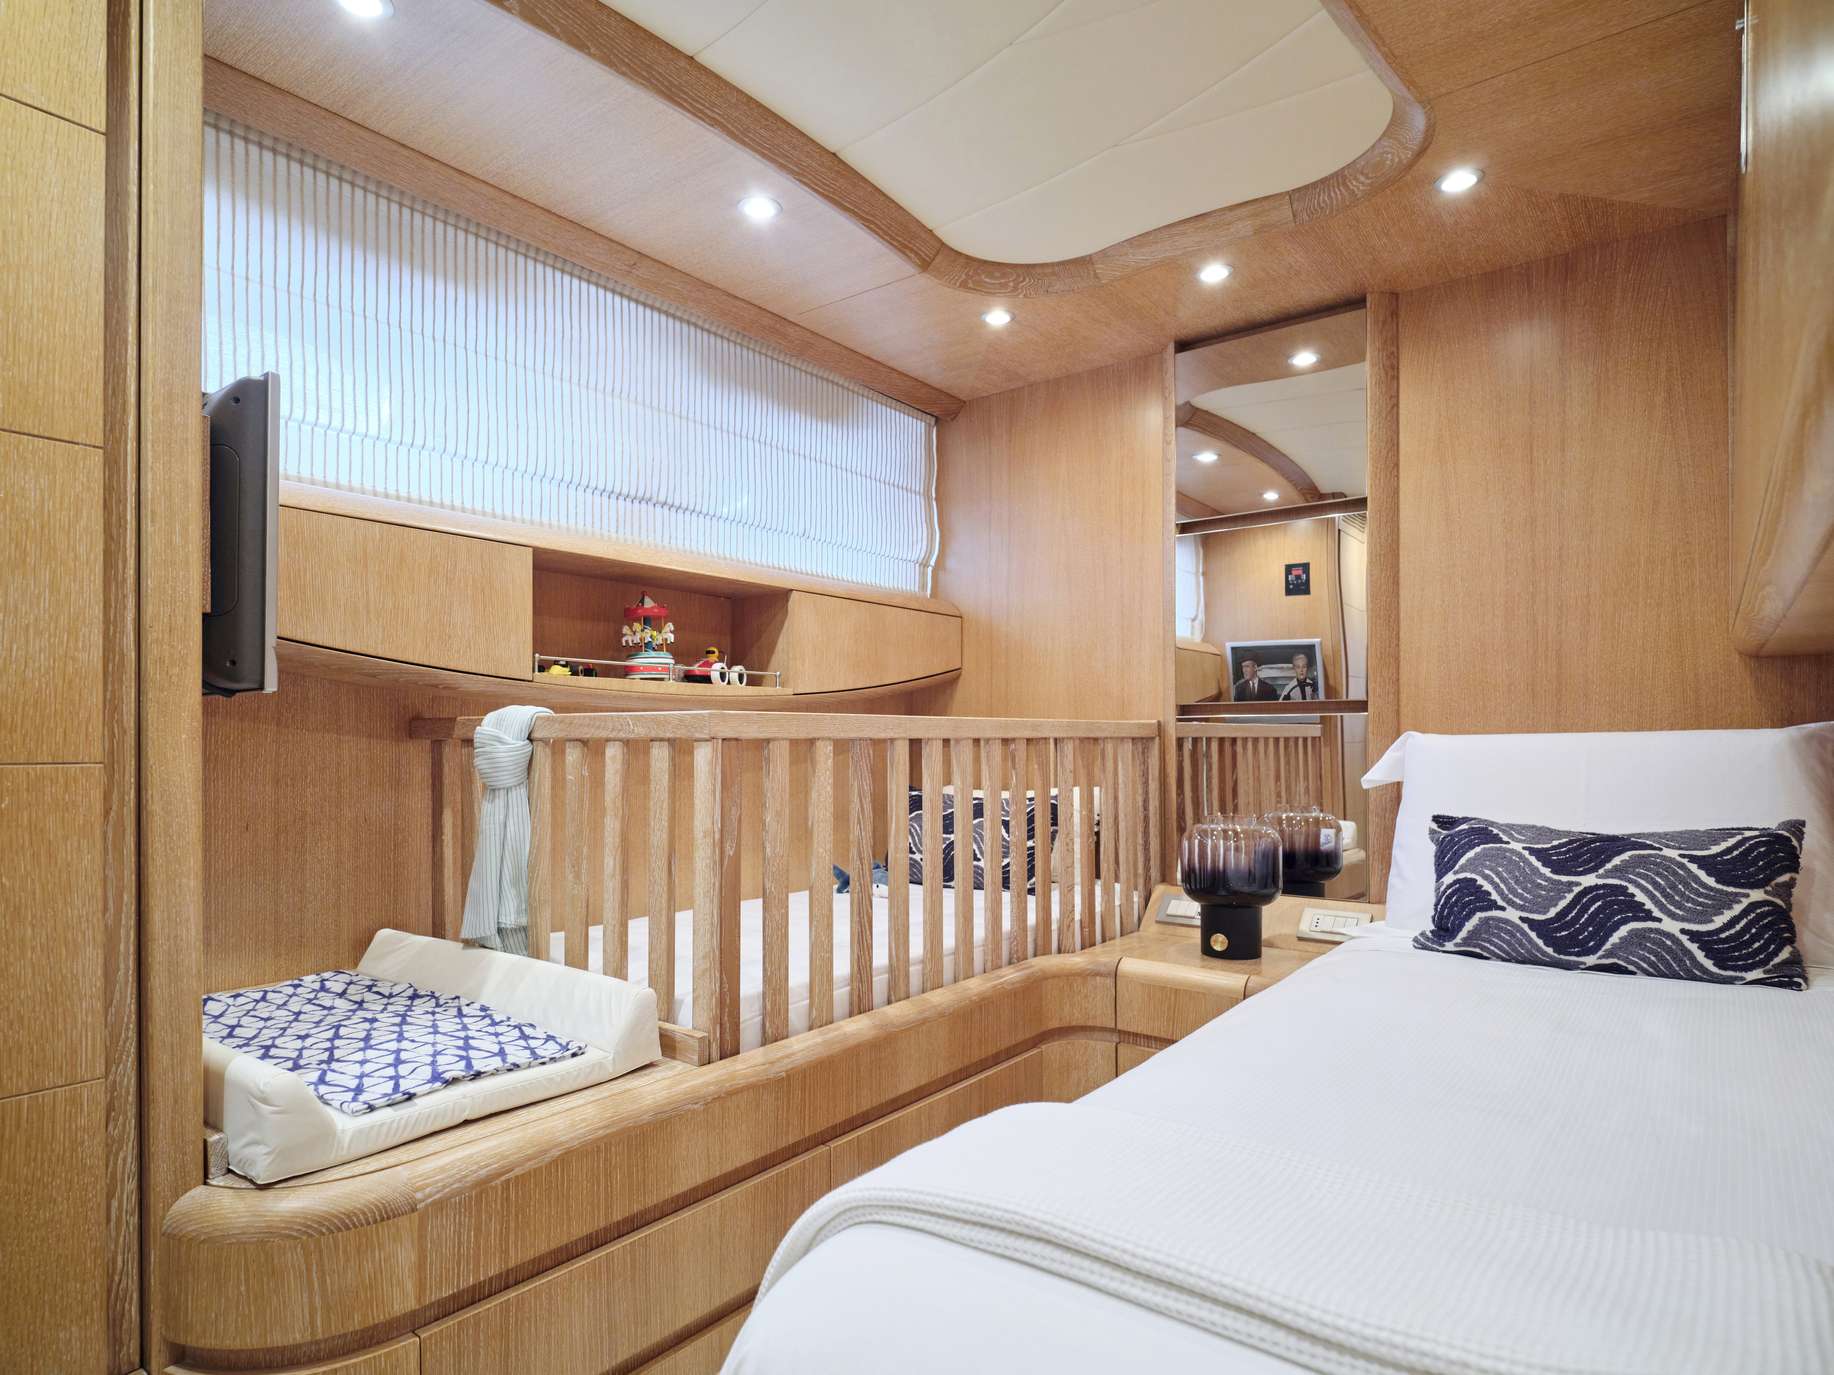 IRENE'S Yacht Charter - Twin Cabin - Crib available